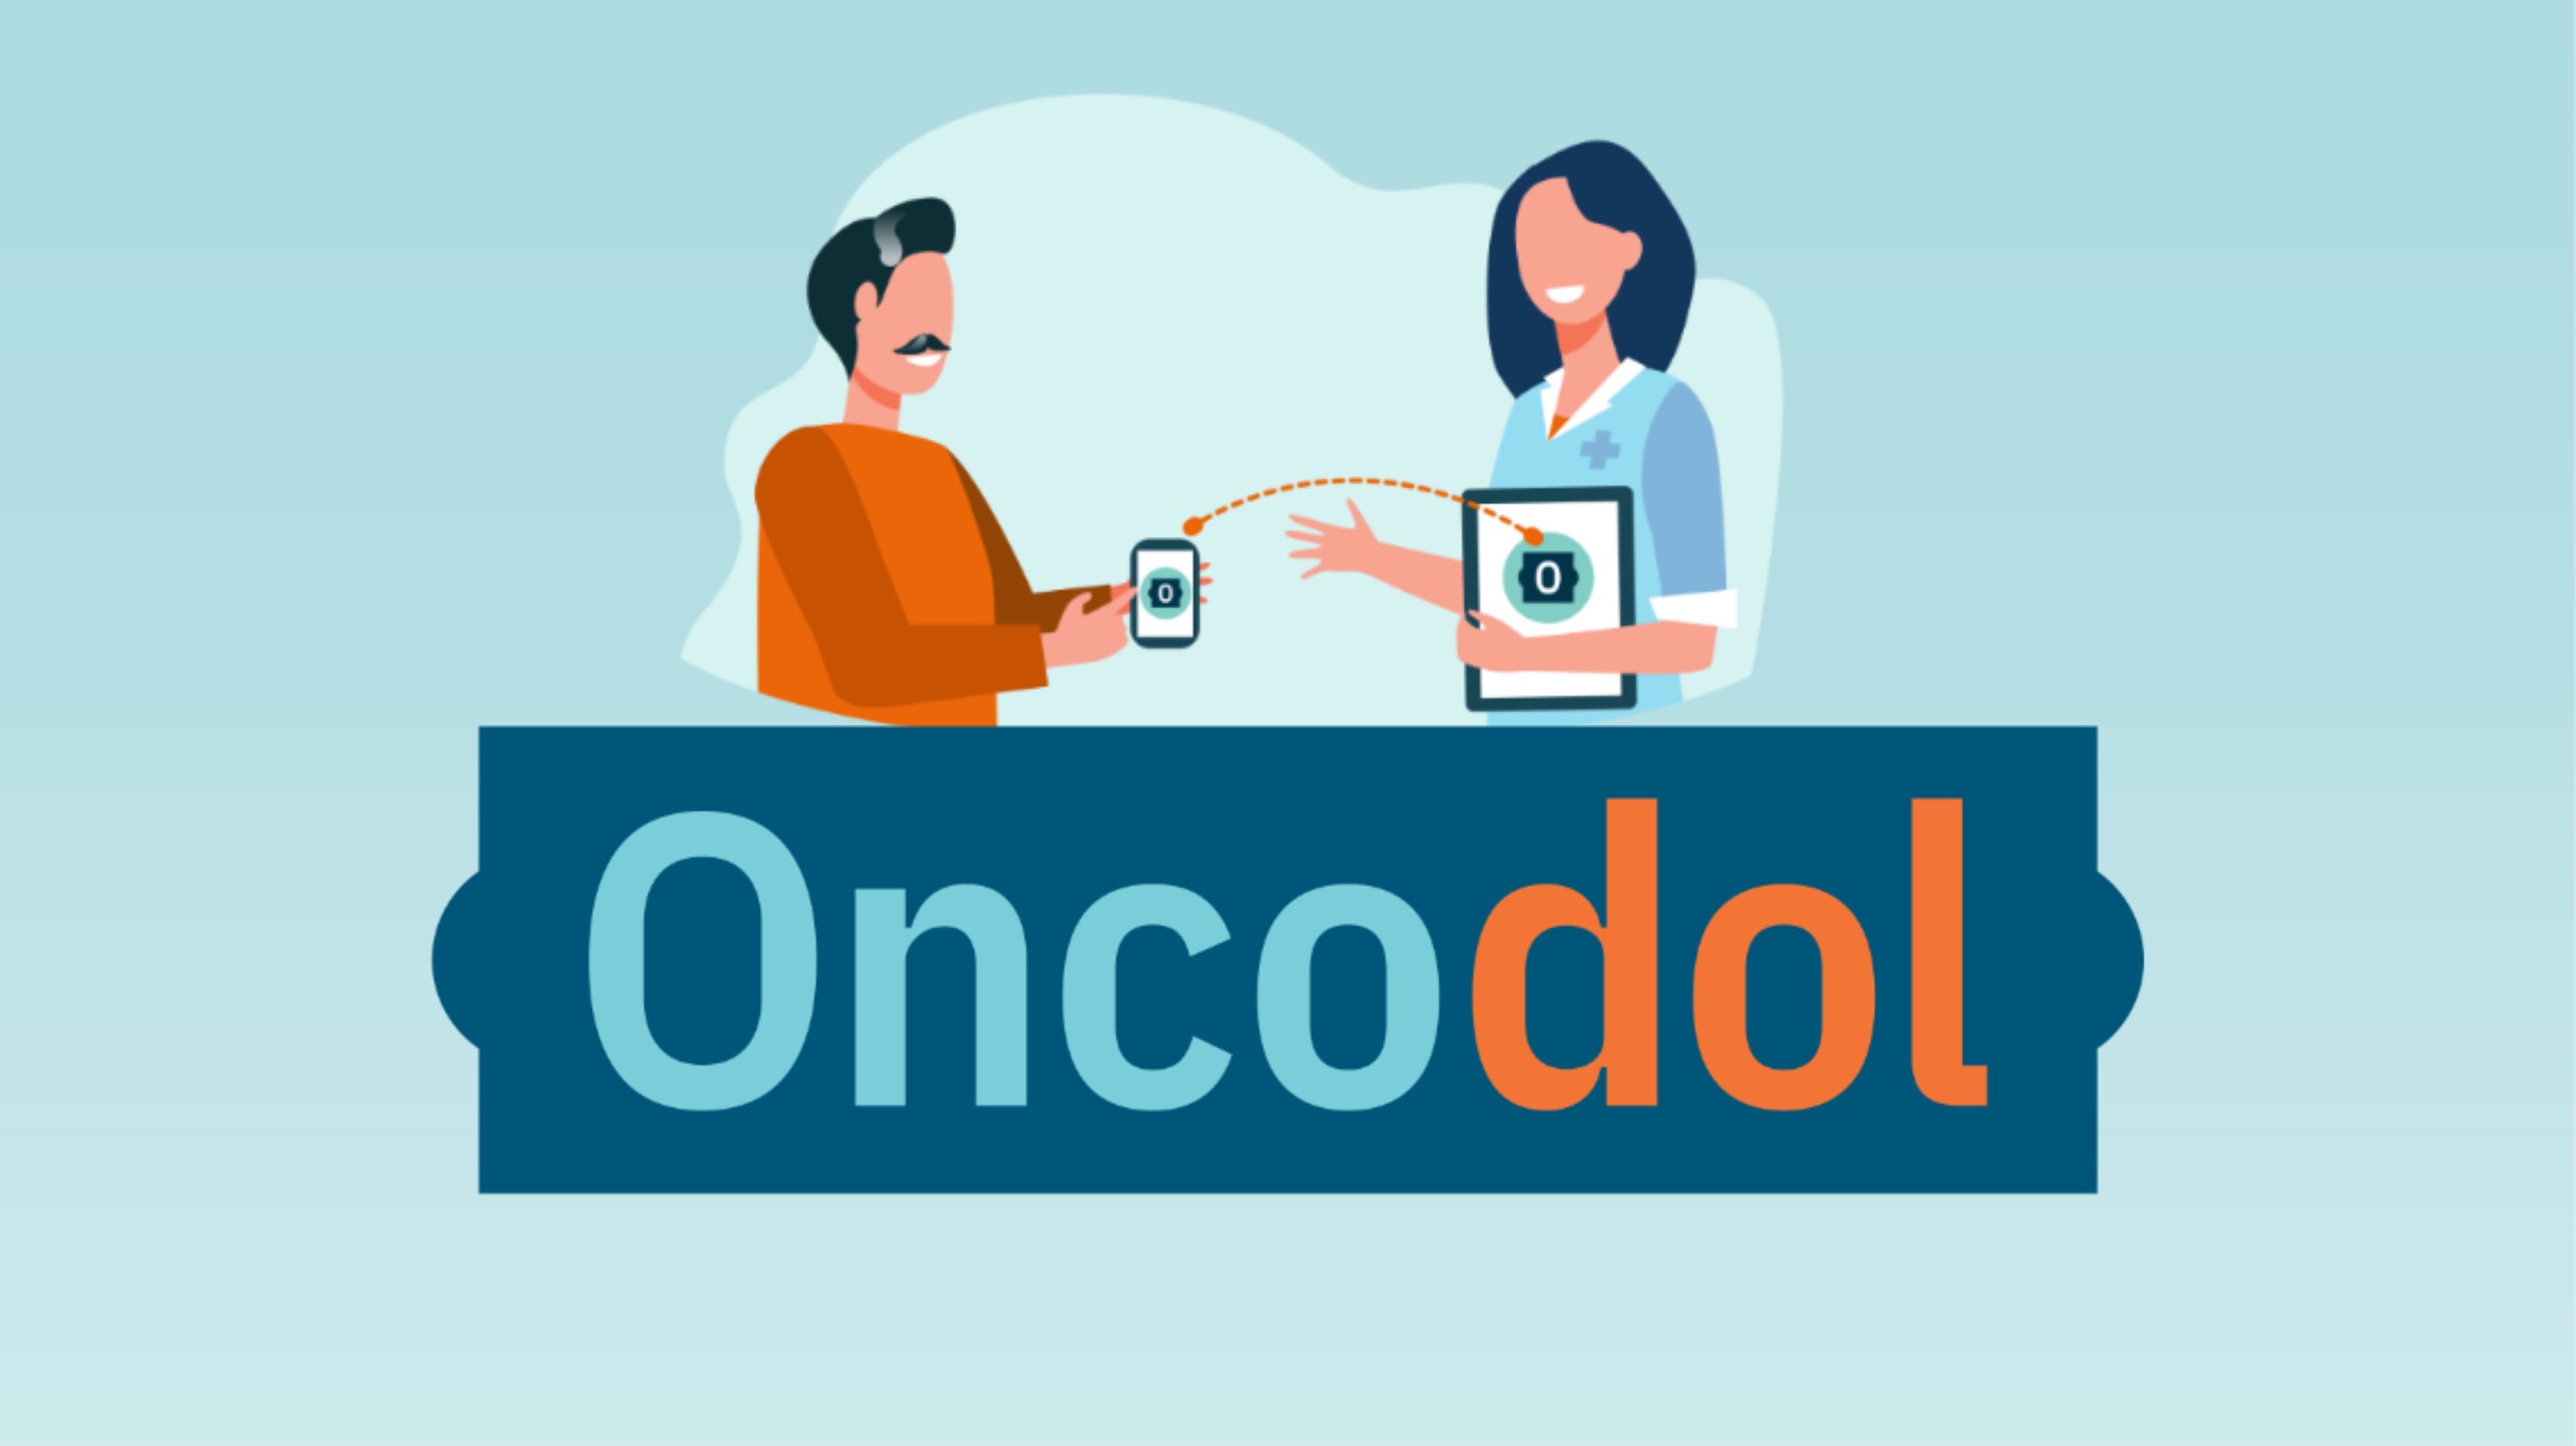 Logo Oncodol.